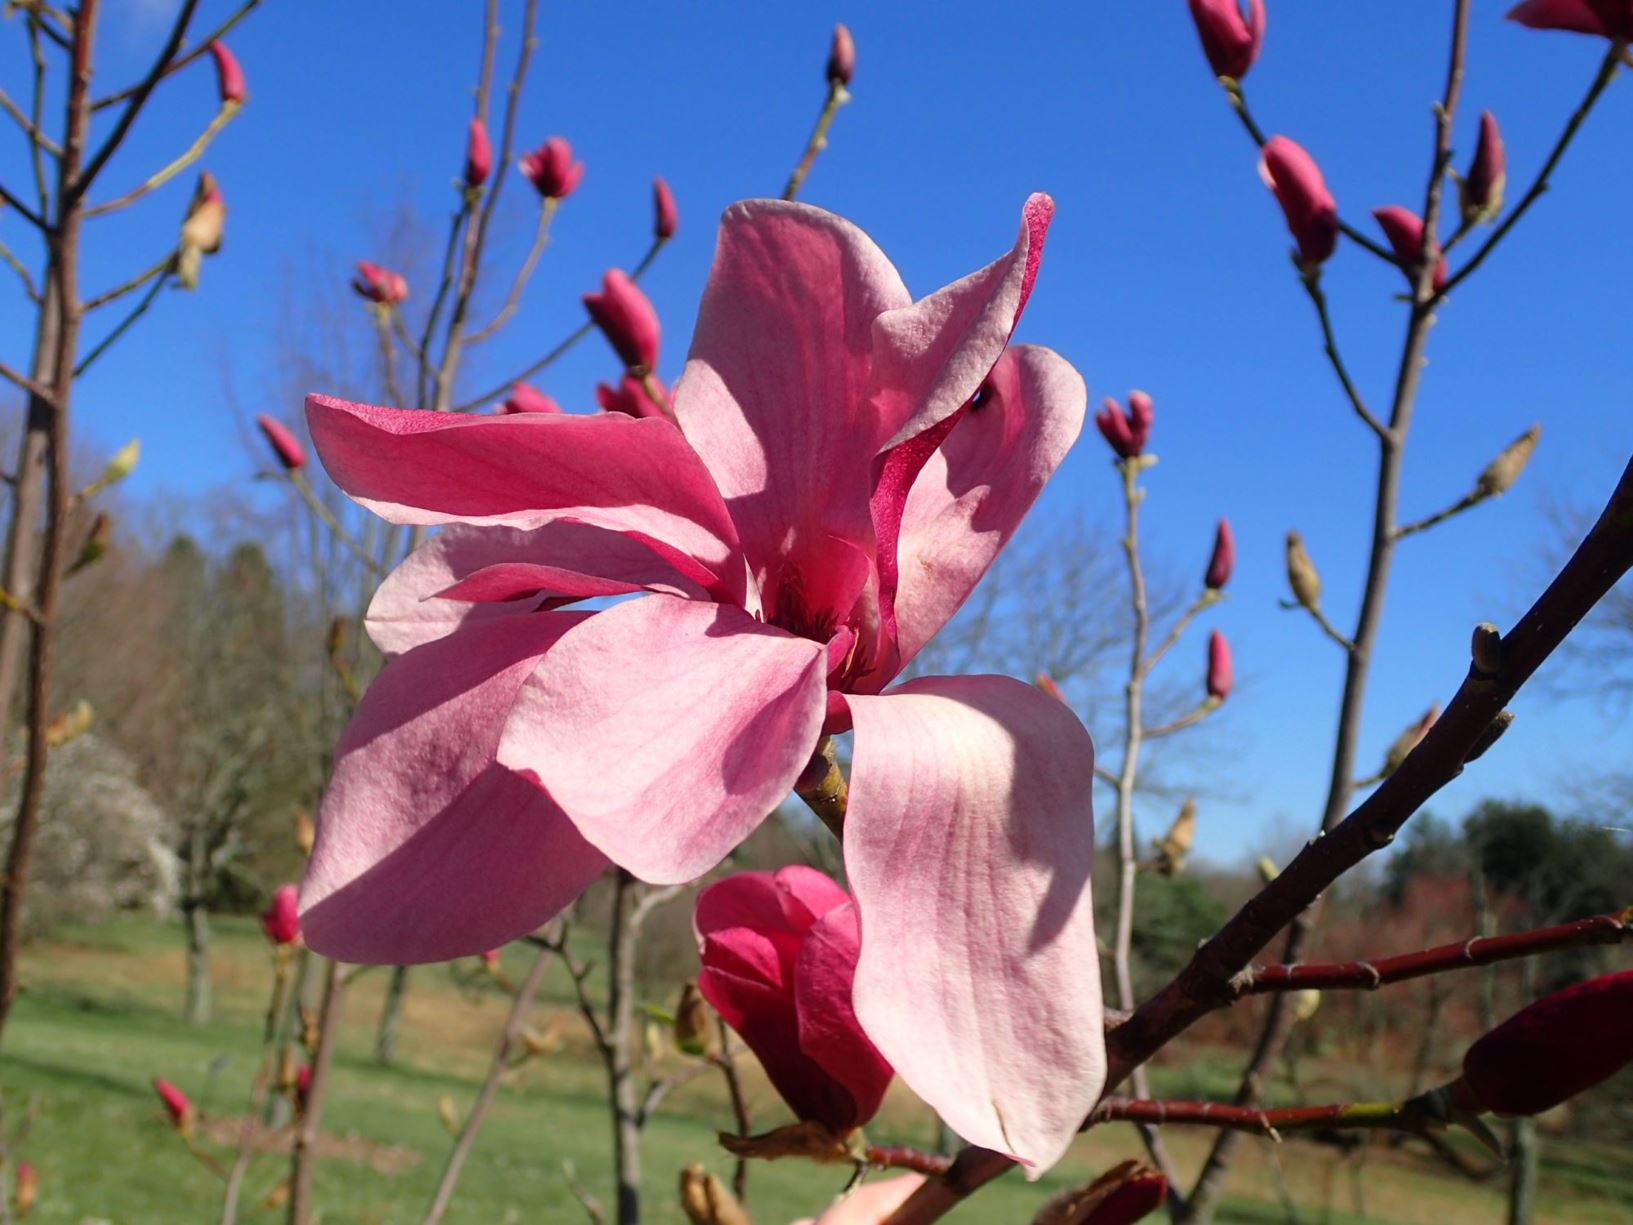 Magnolia 'Blazing Beauty' - Blazing Beauty magnolia